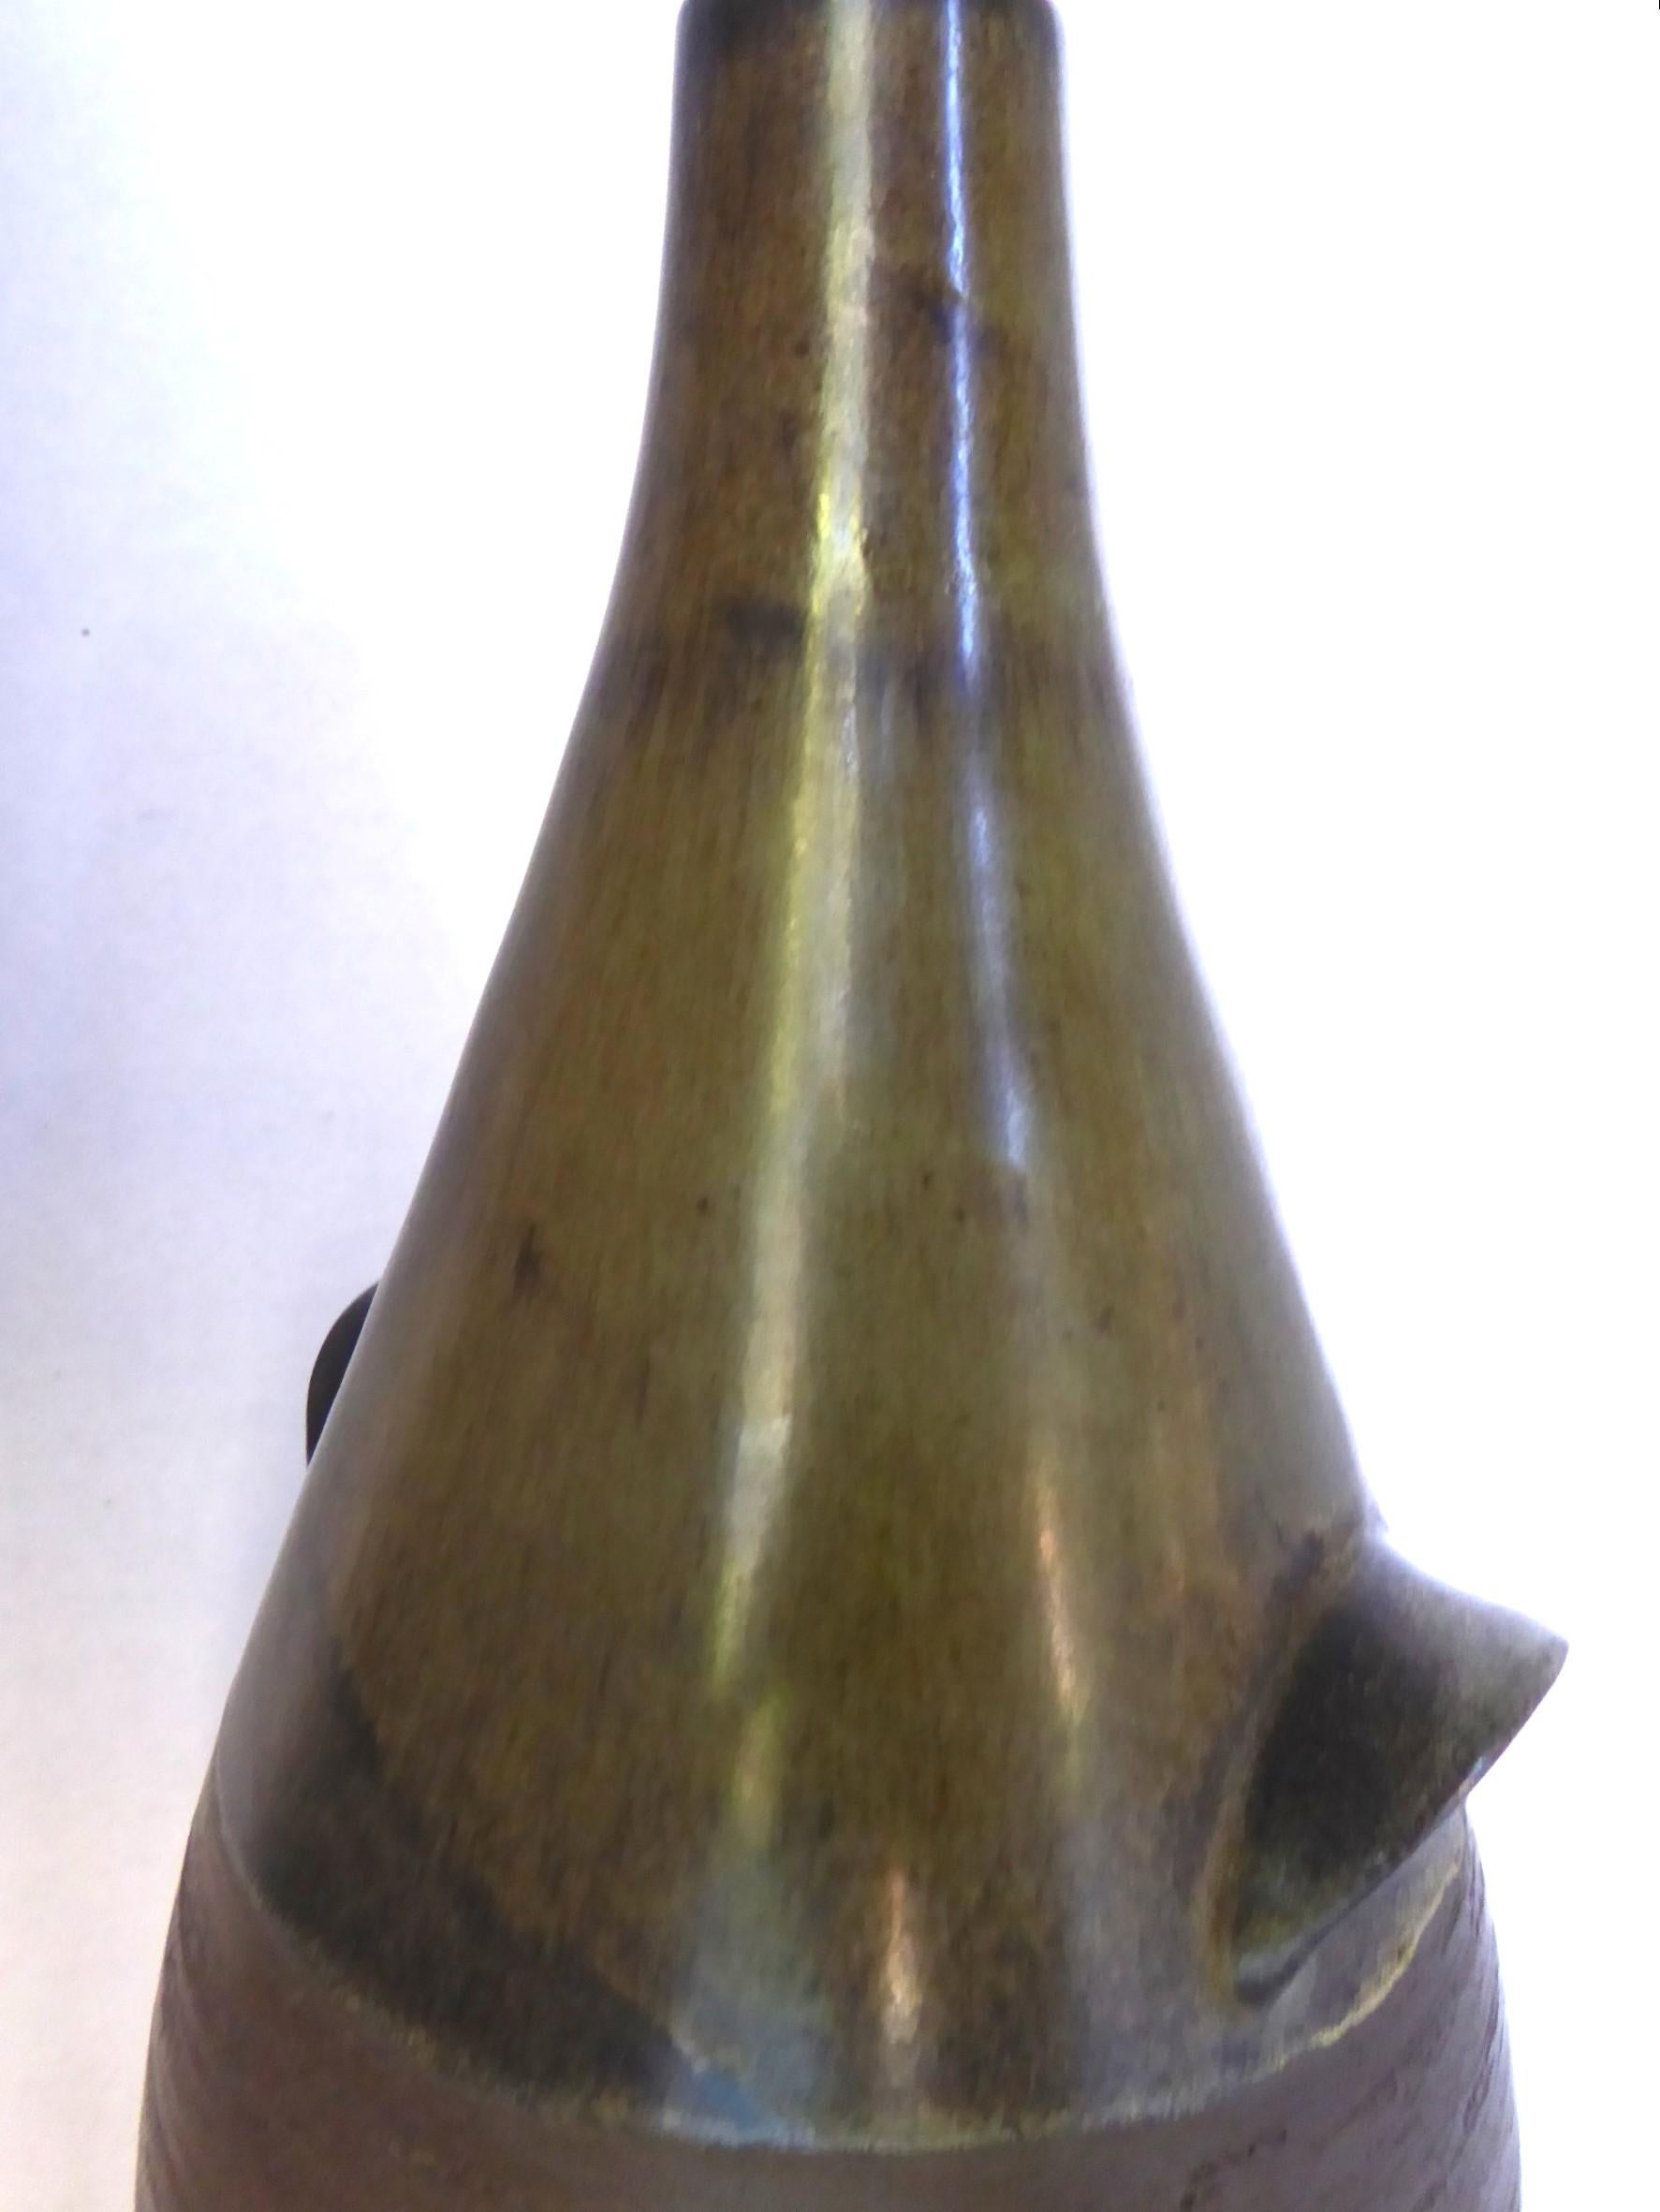 (okoko)Scandinavian Mid Century Modern Pottery Bottle Vase from BR Denmark 1960s For Sale 2